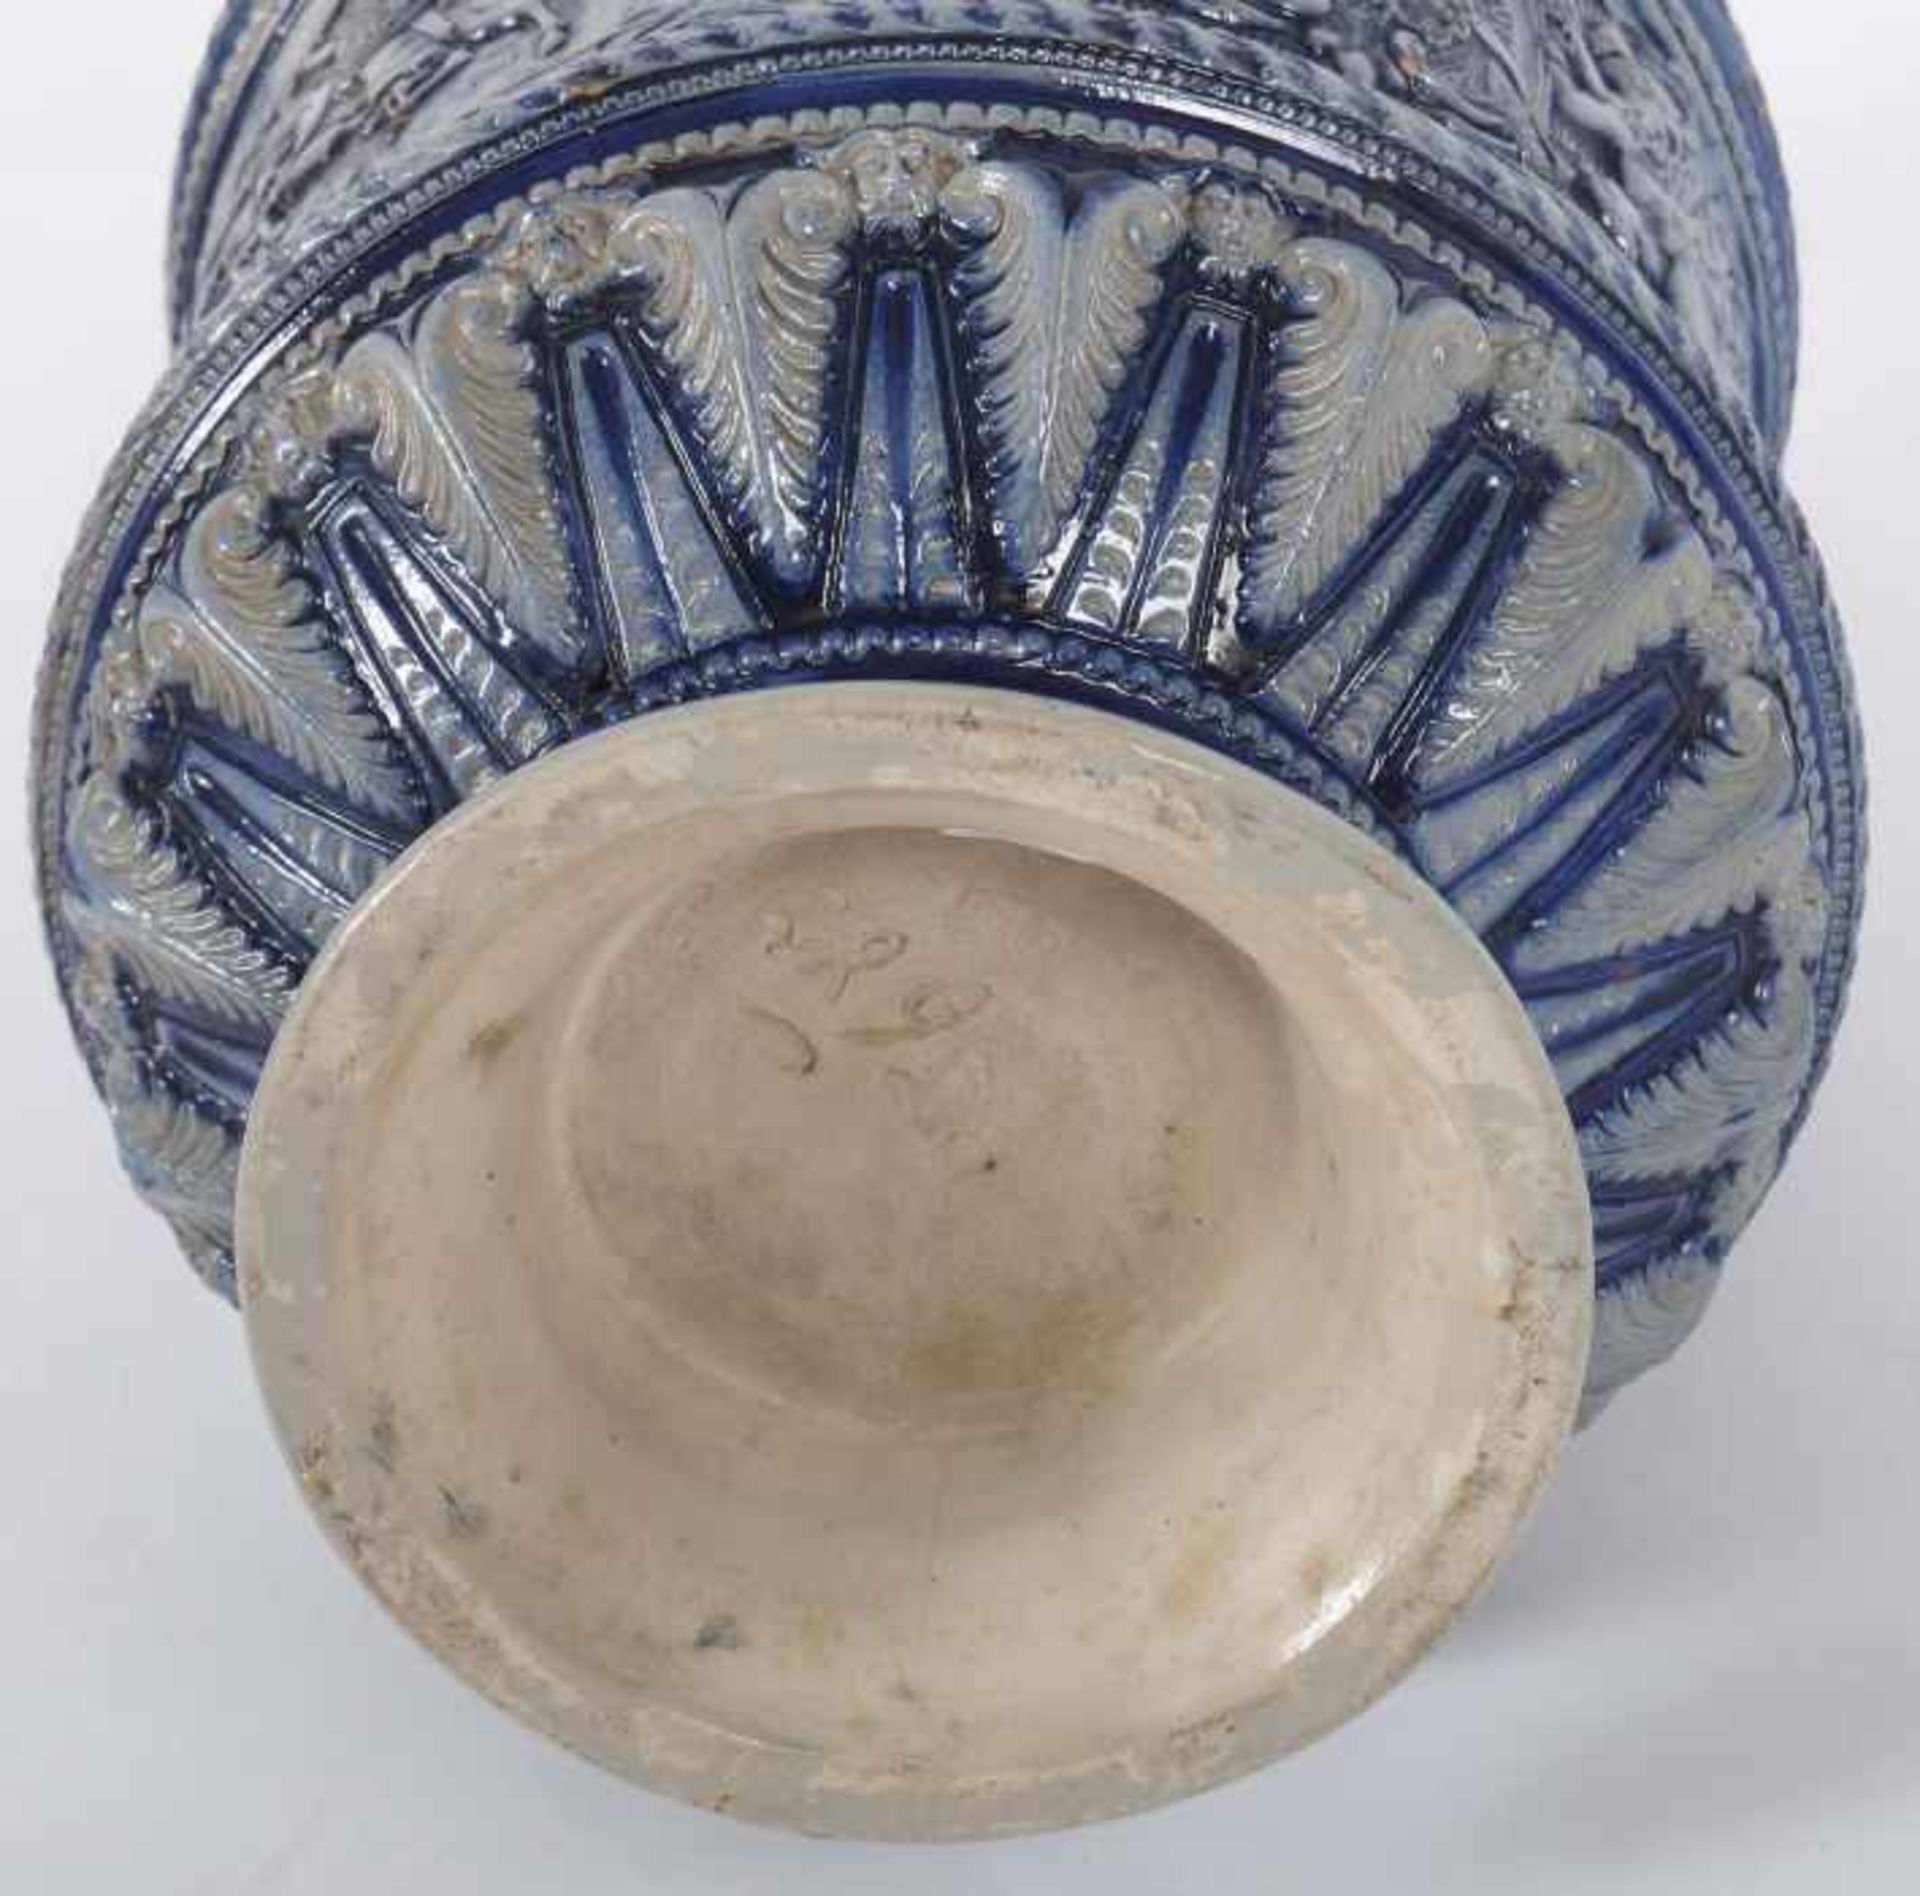 Großer Historismus-Krugum 1880/90, Steinzeug, salzglasiert, part. kobaltblau staffiert, - Bild 4 aus 4